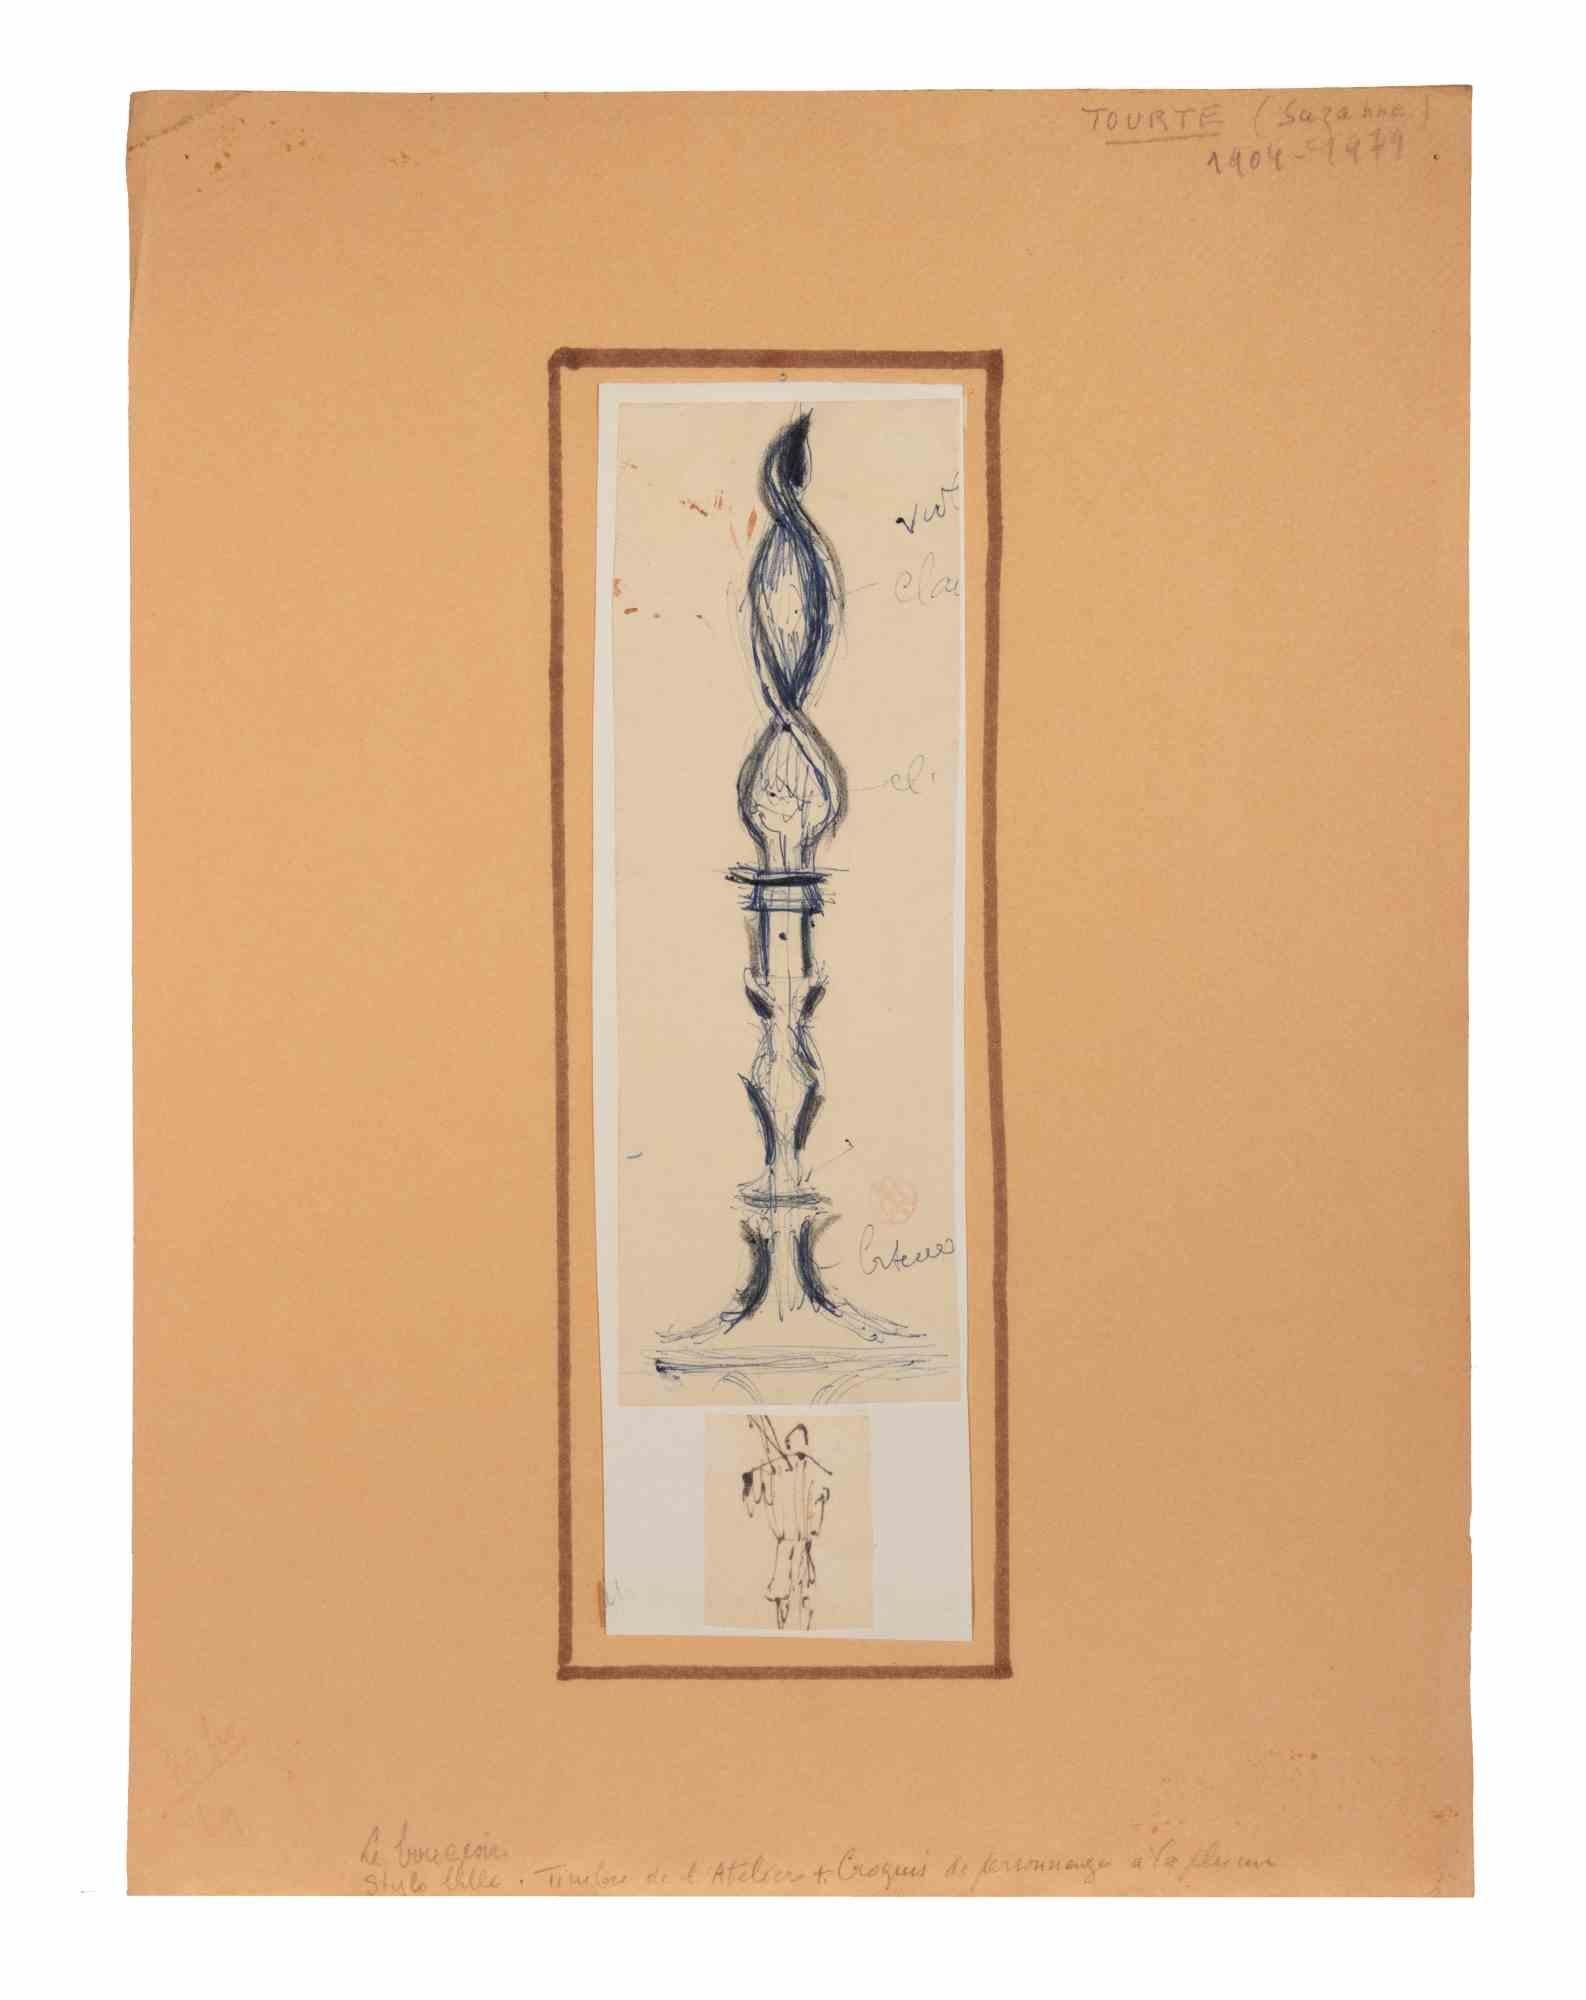 Die Kerze ist eine Zeichnung aus der Mitte des 20. Jahrhunderts von Suzanne Tourte (1904-1979).

Zwei Zeichnungen (Die Kerze und ein Mann) in Tusche, Bleistift und Kohle auf Papier.

Einschließlich eines Passepartouts

Guter Zustand.